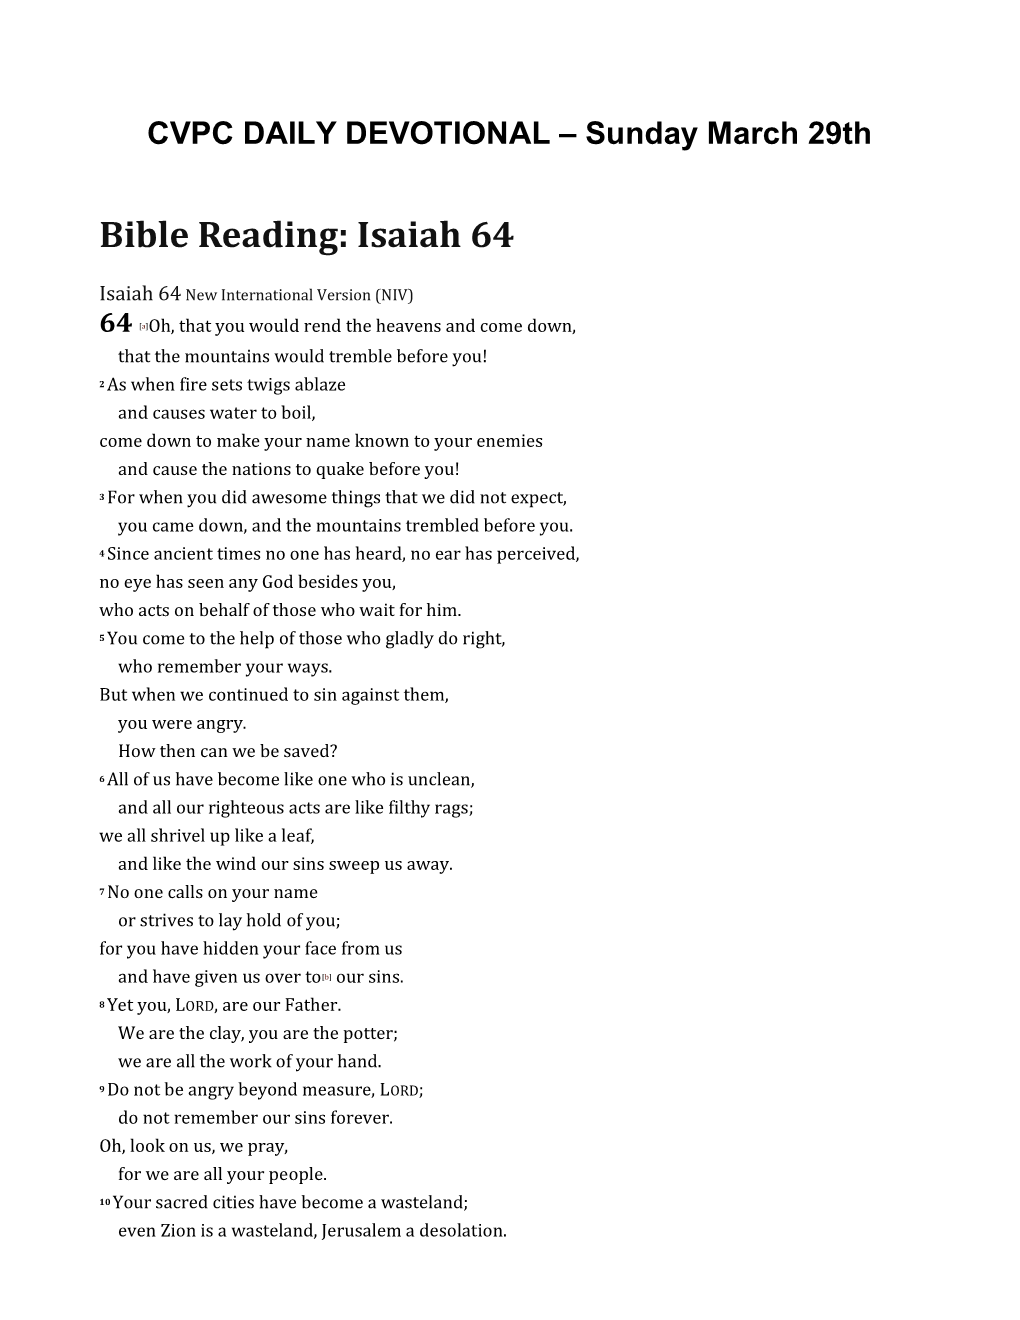 Bible Reading: Isaiah 64